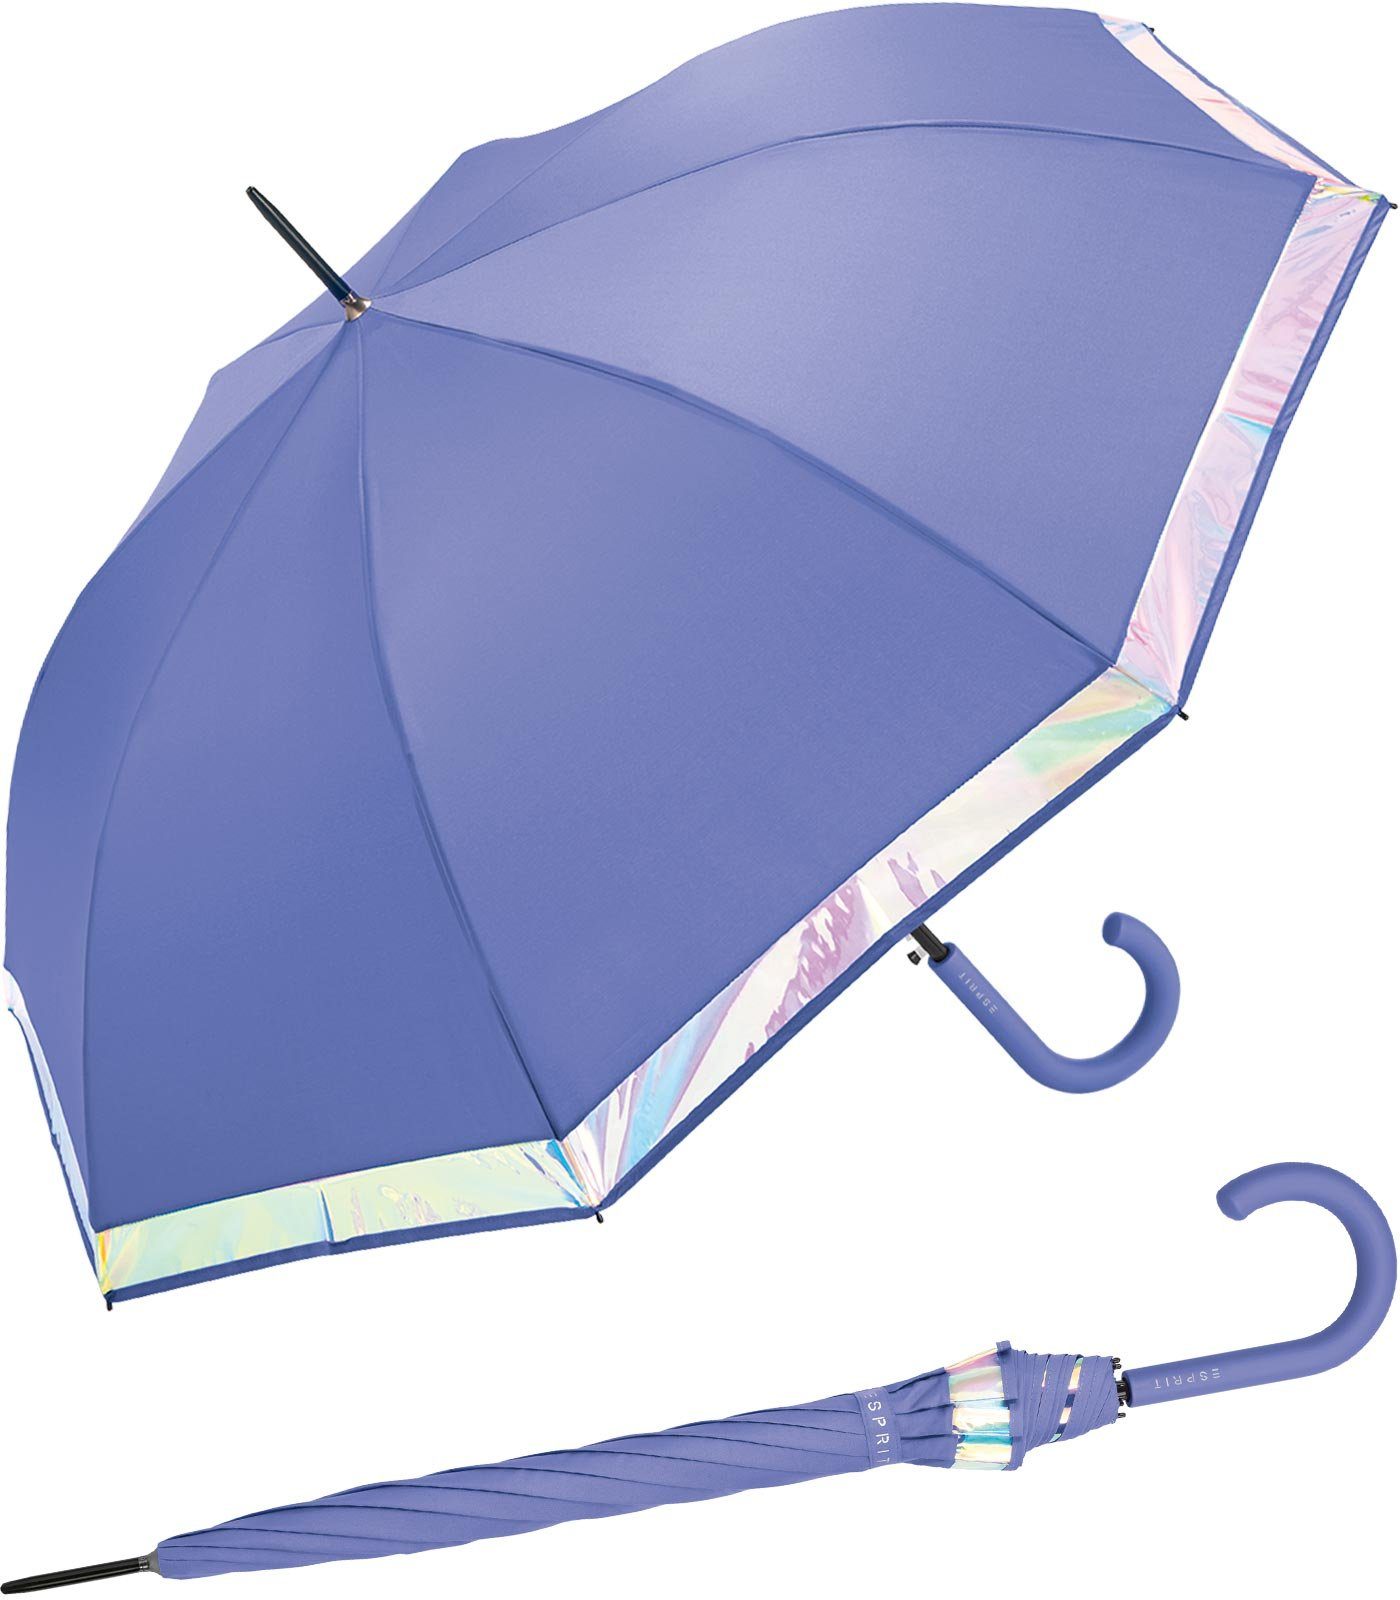 mit Damen Borte violett groß schimmernder Regenschirm Border, Langregenschirm Esprit Automatik und stabil, mit Shiny